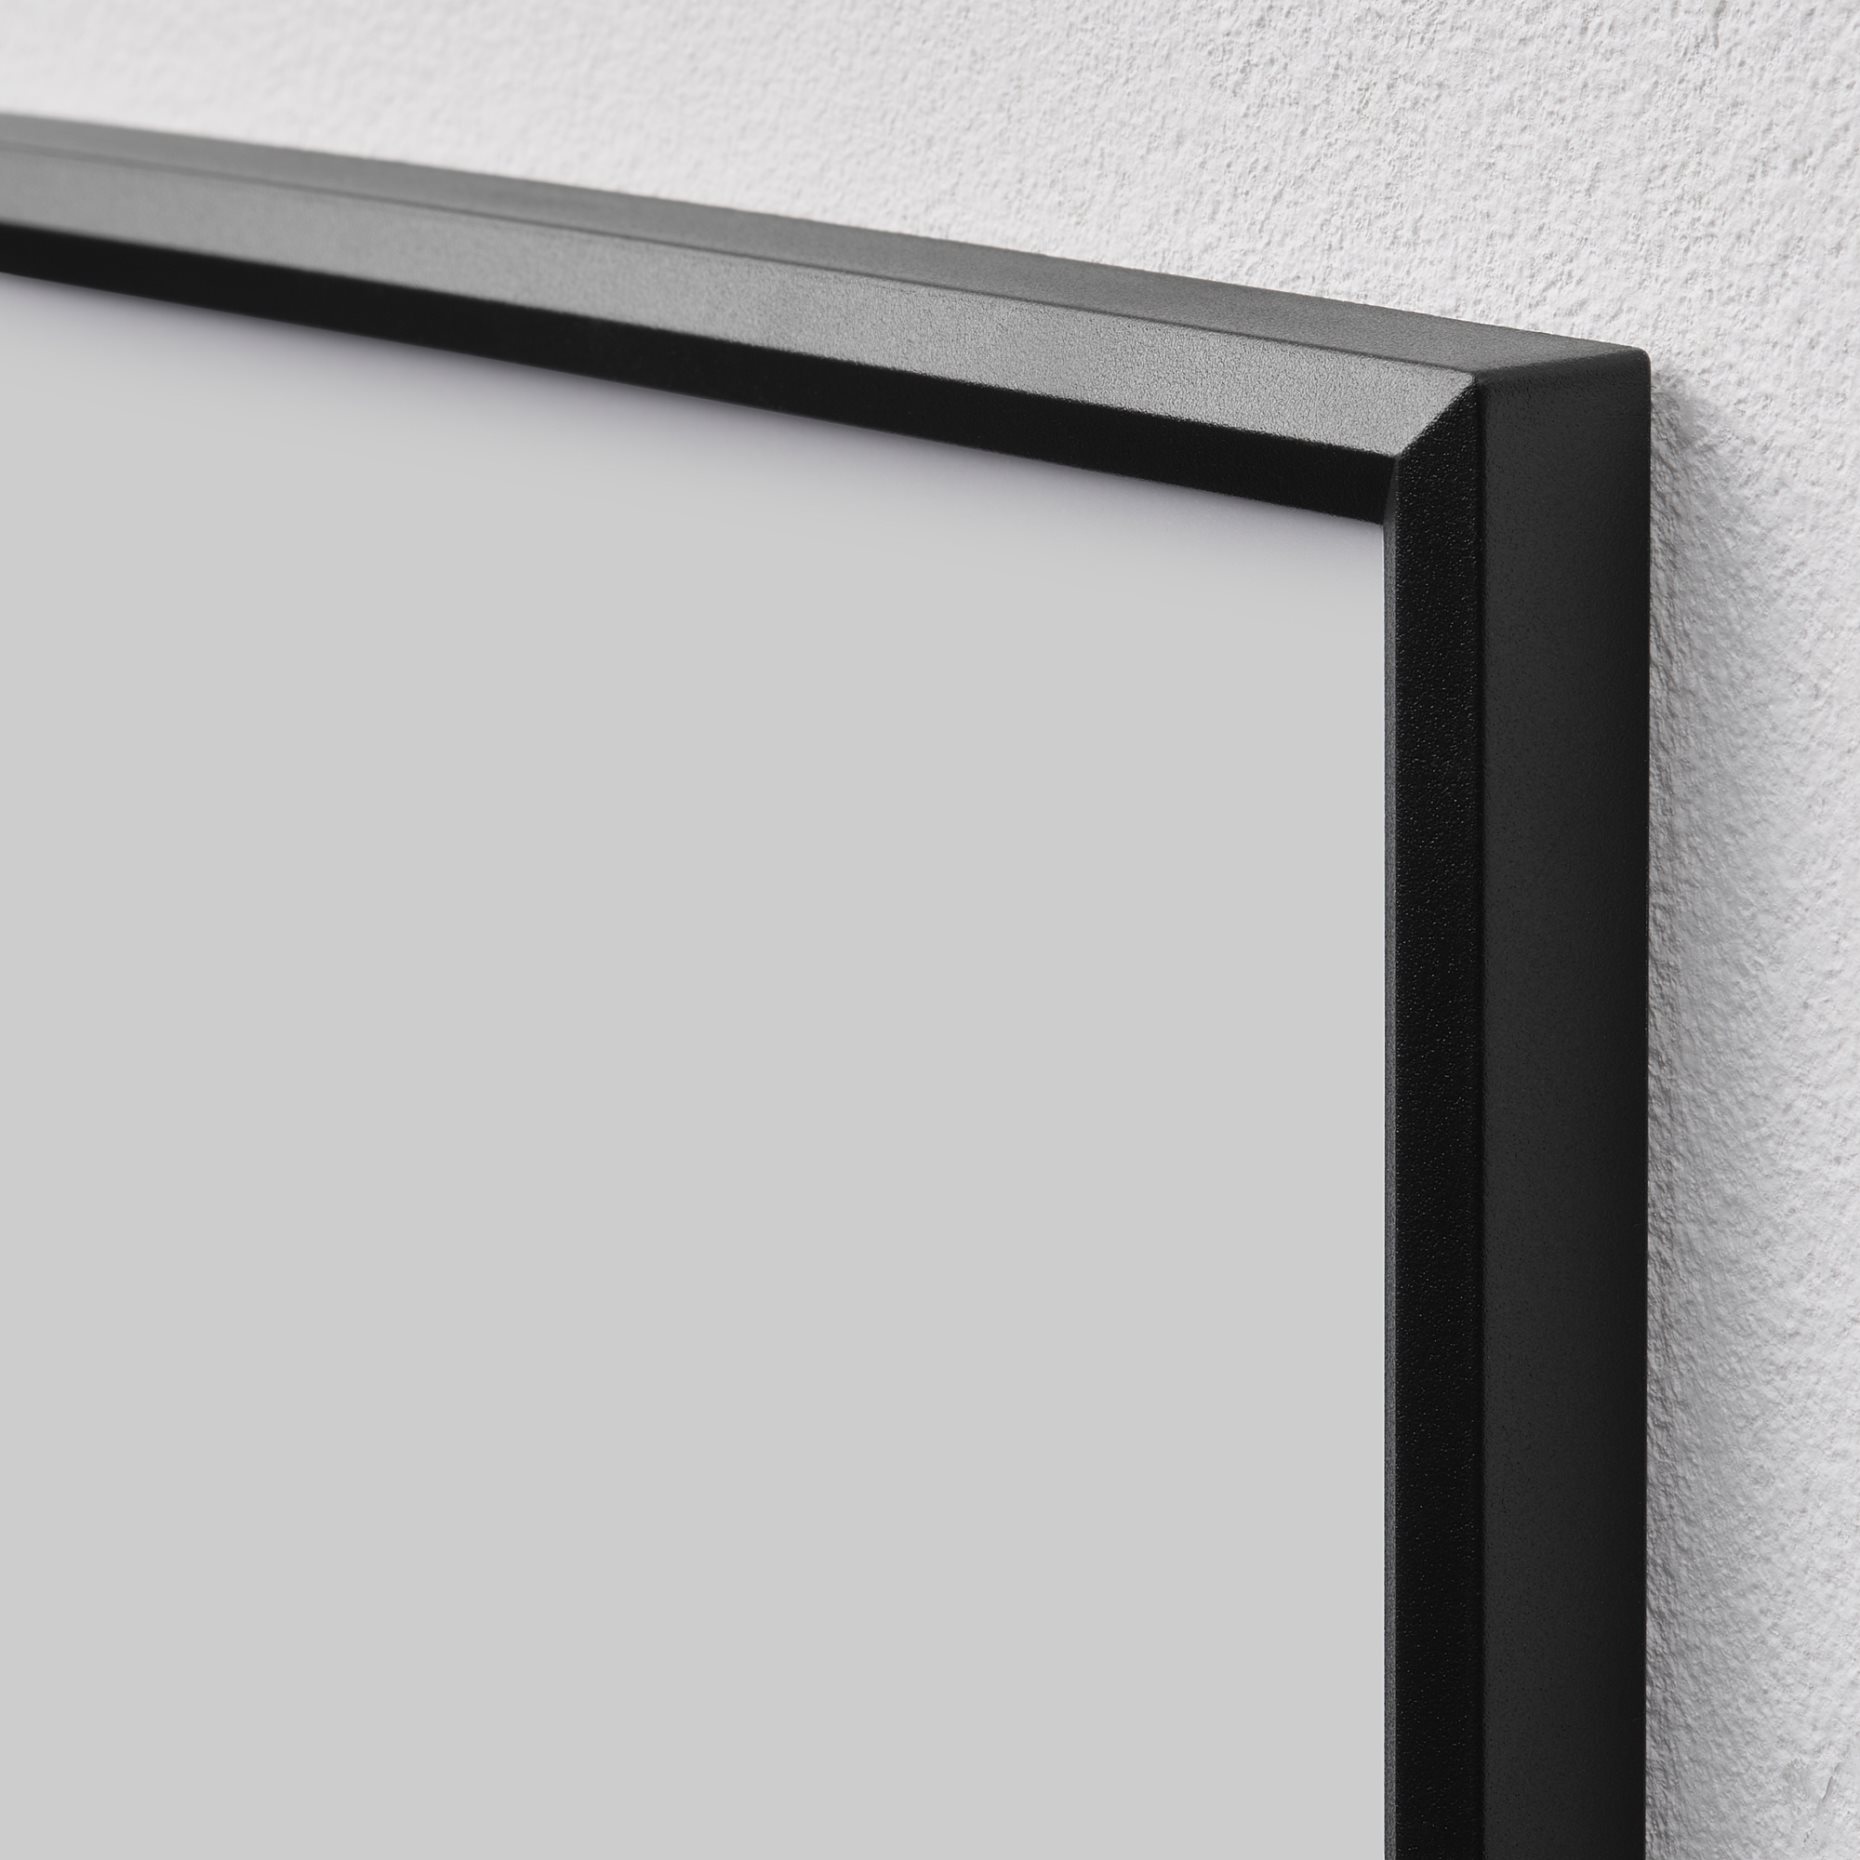 YLLEVAD, frame, 21x30 cm, 304.297.74